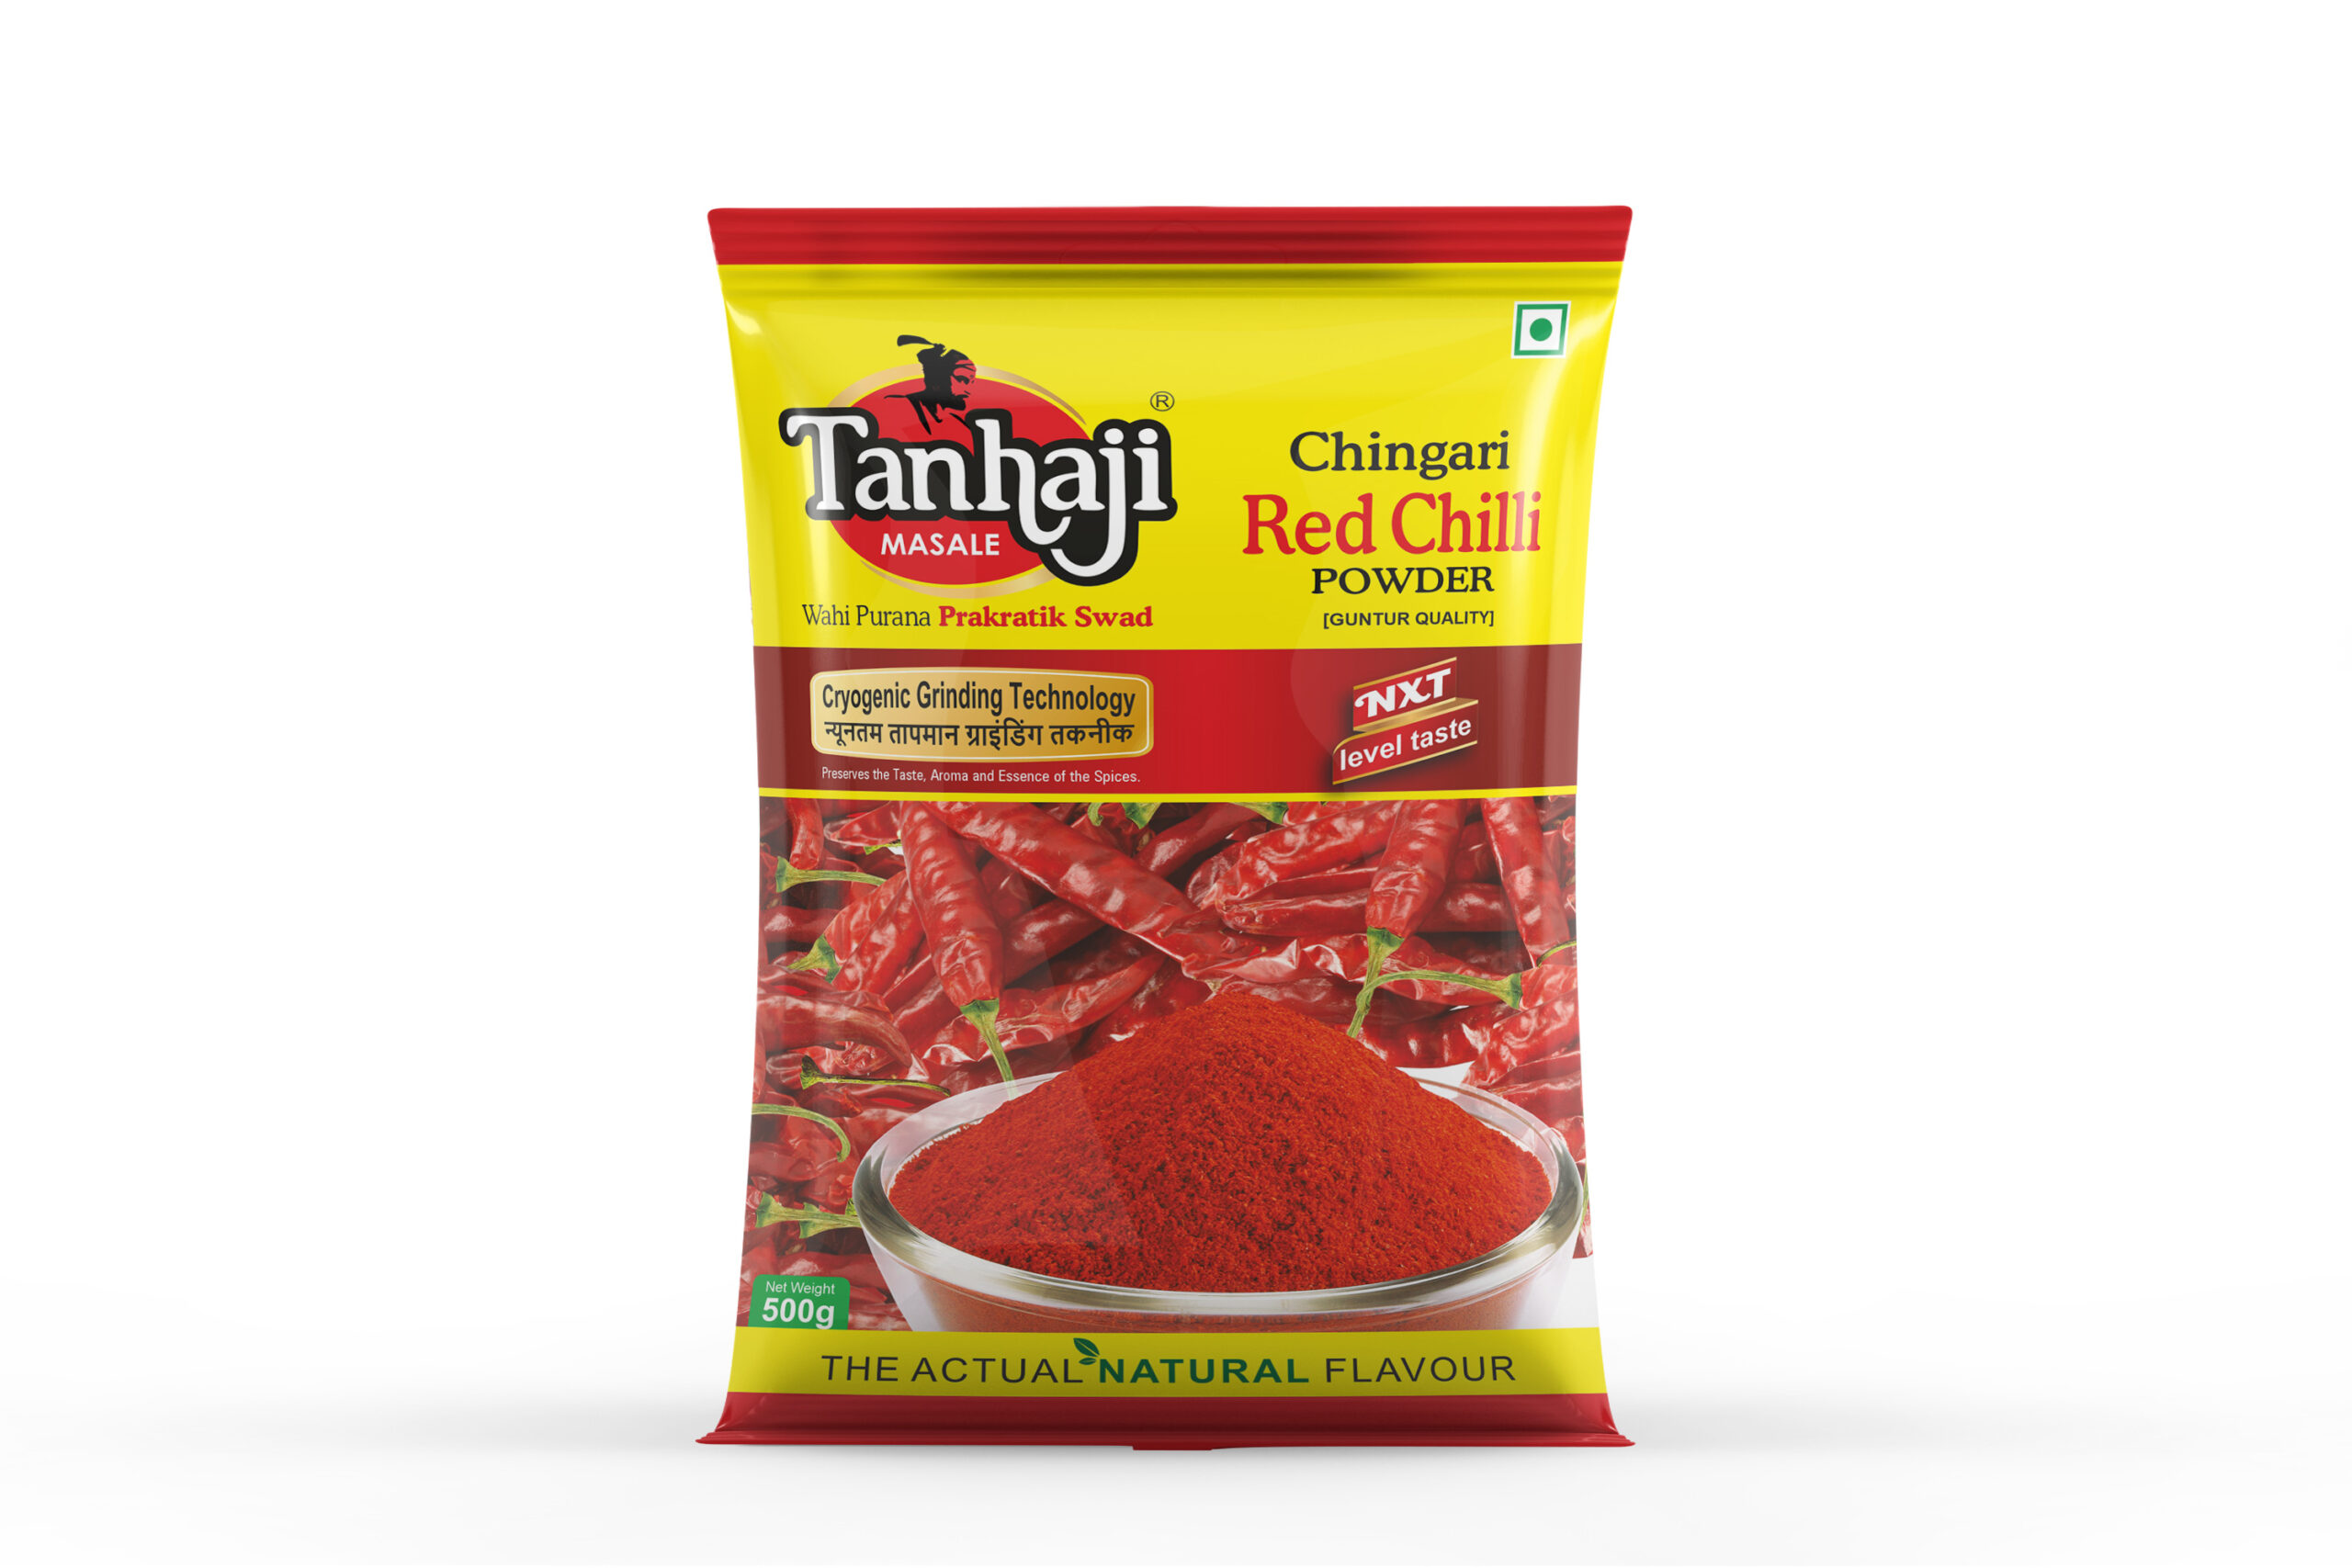 Chingari Red Chili Powder